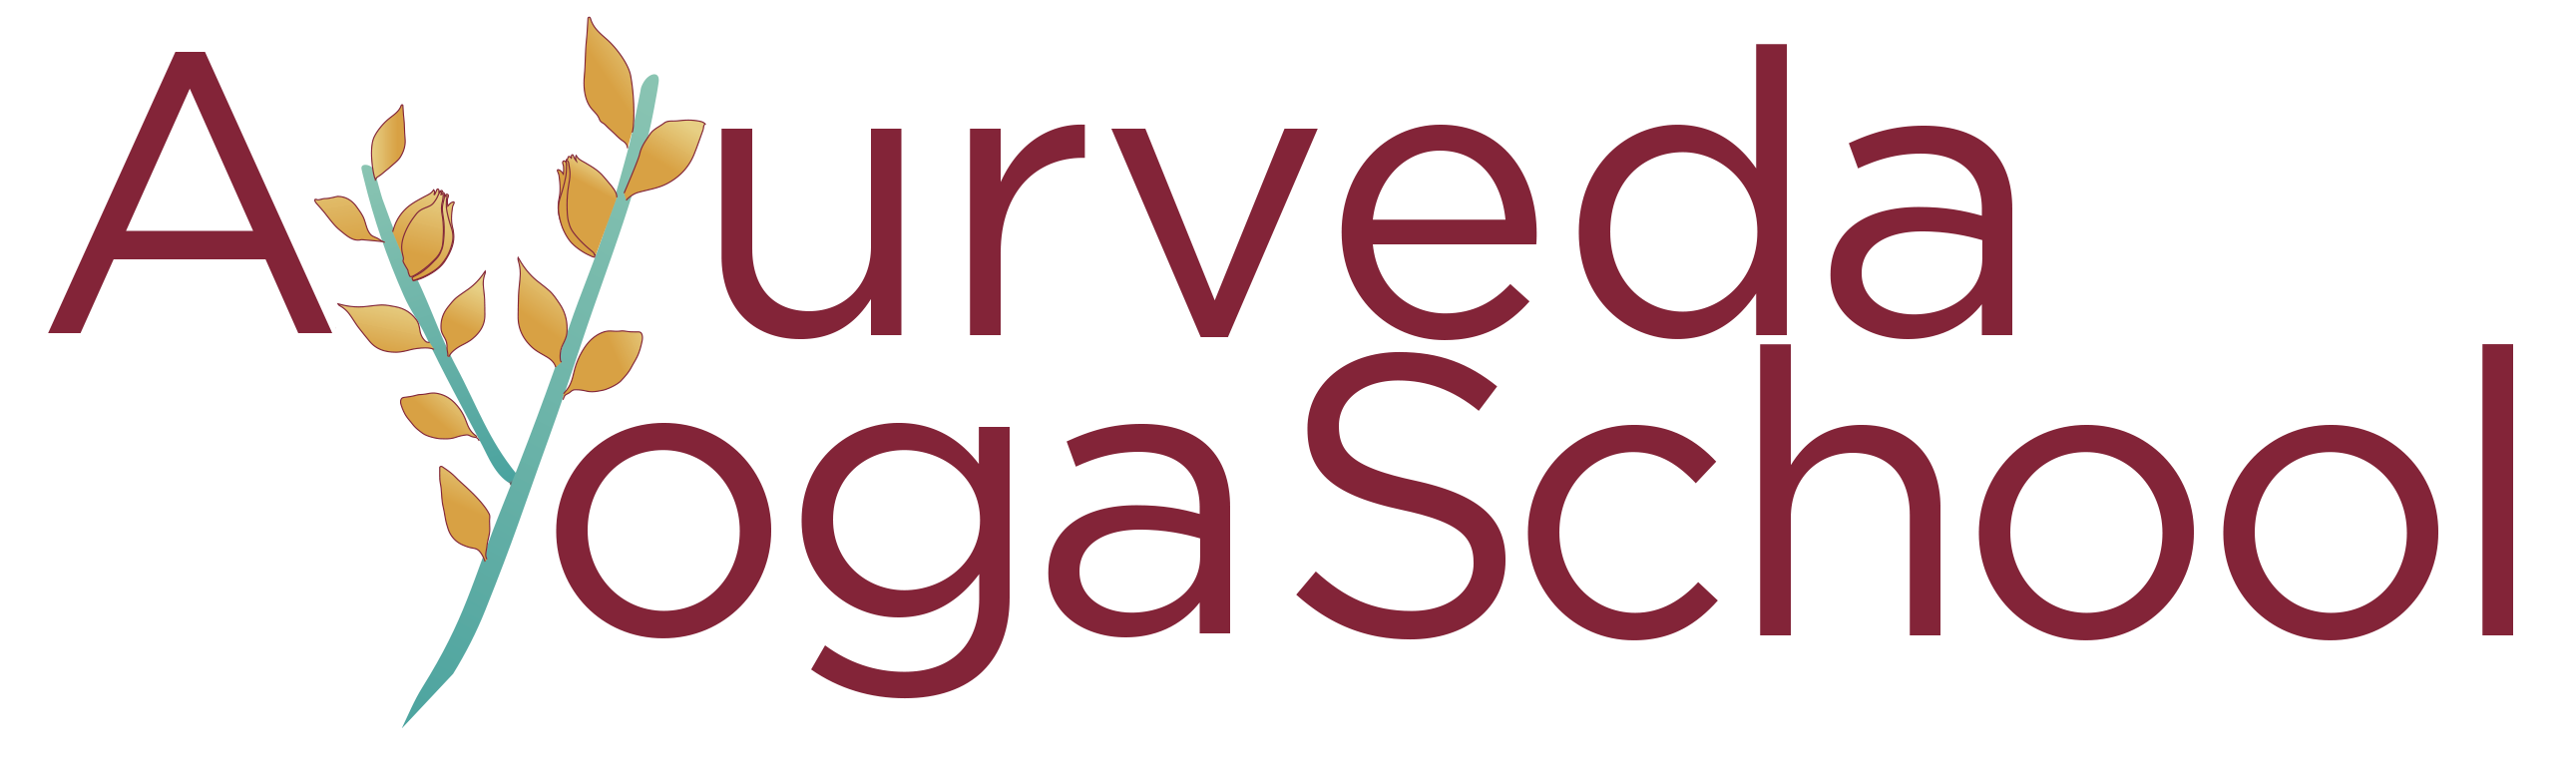 Ayurveda School of Yoga